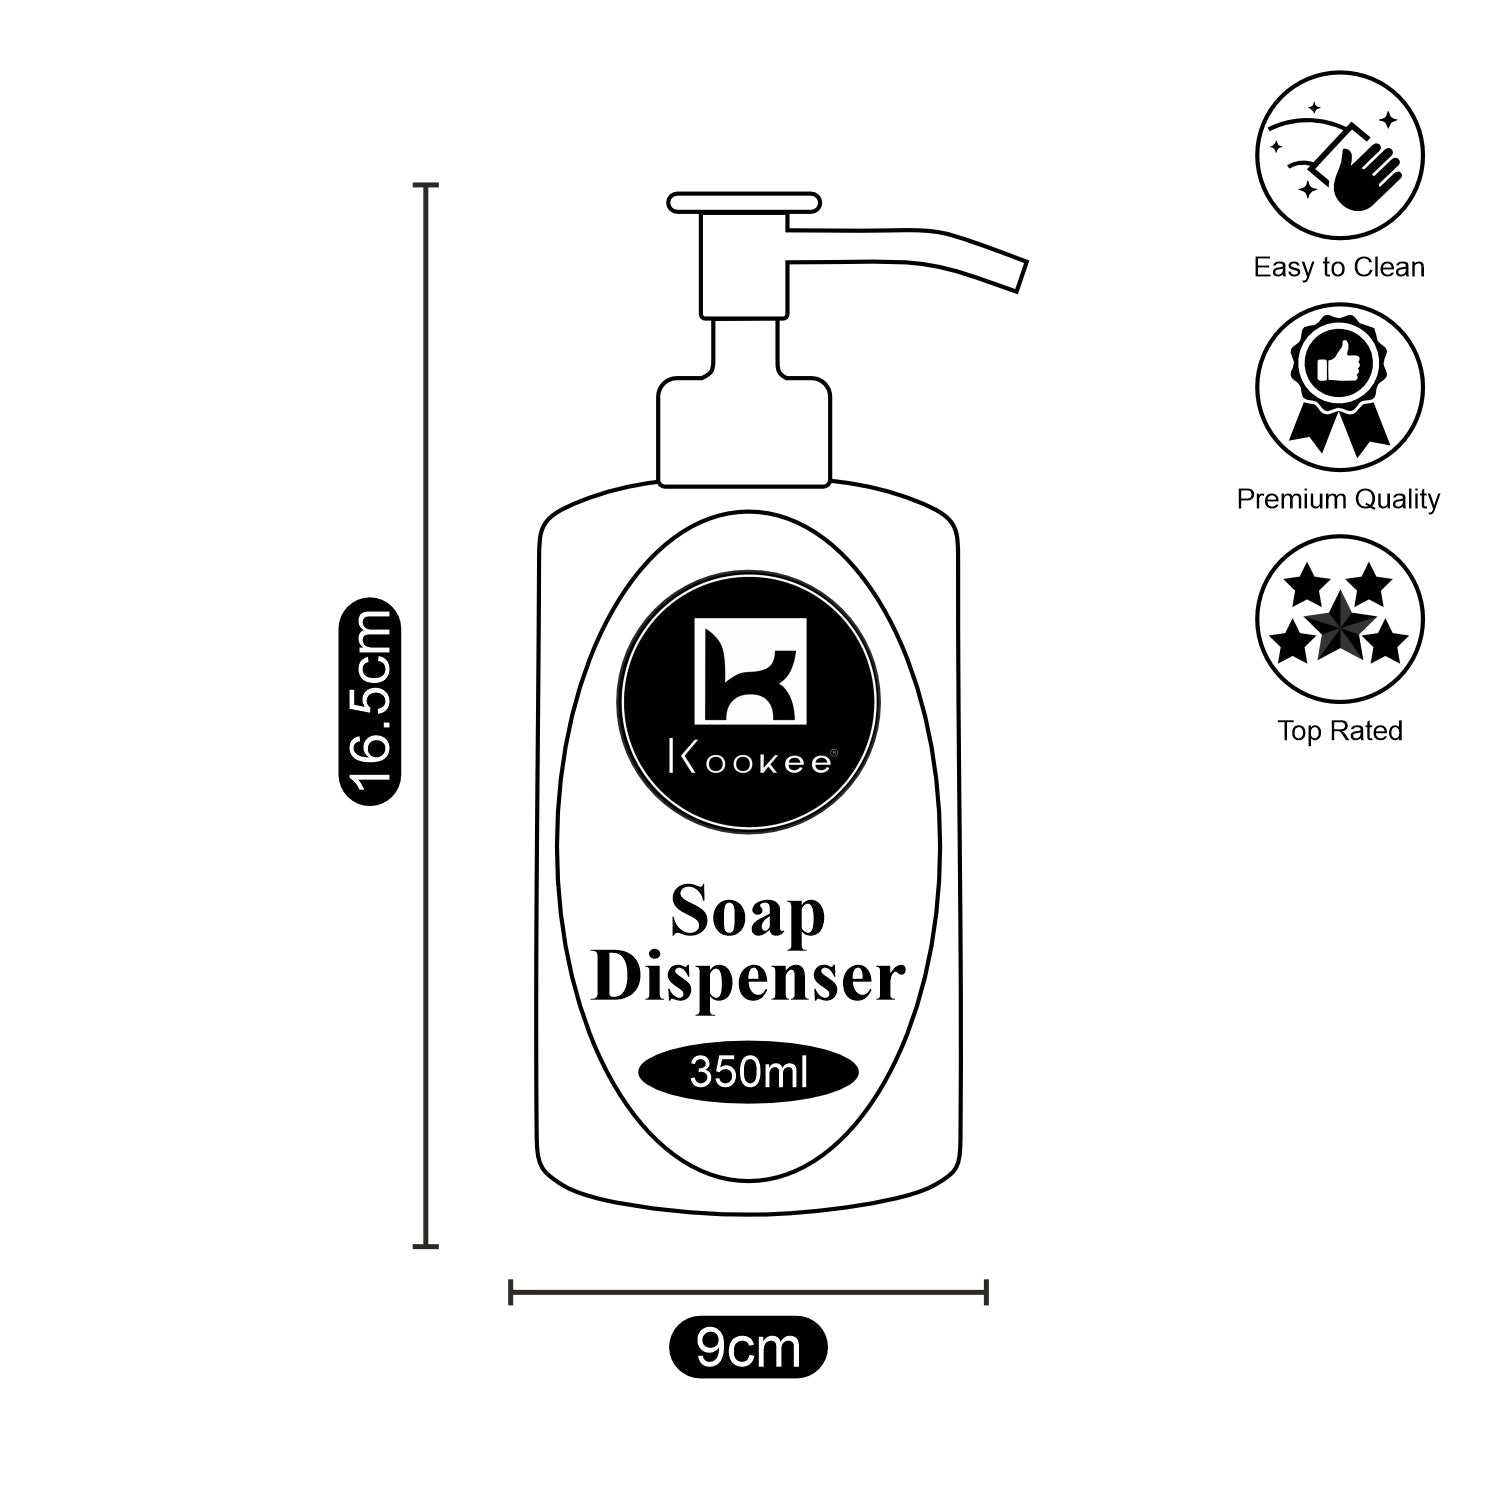 Ceramic Soap Dispenser liquid handwash pump for Bathroom, Set of 1, White/Gold (10592)